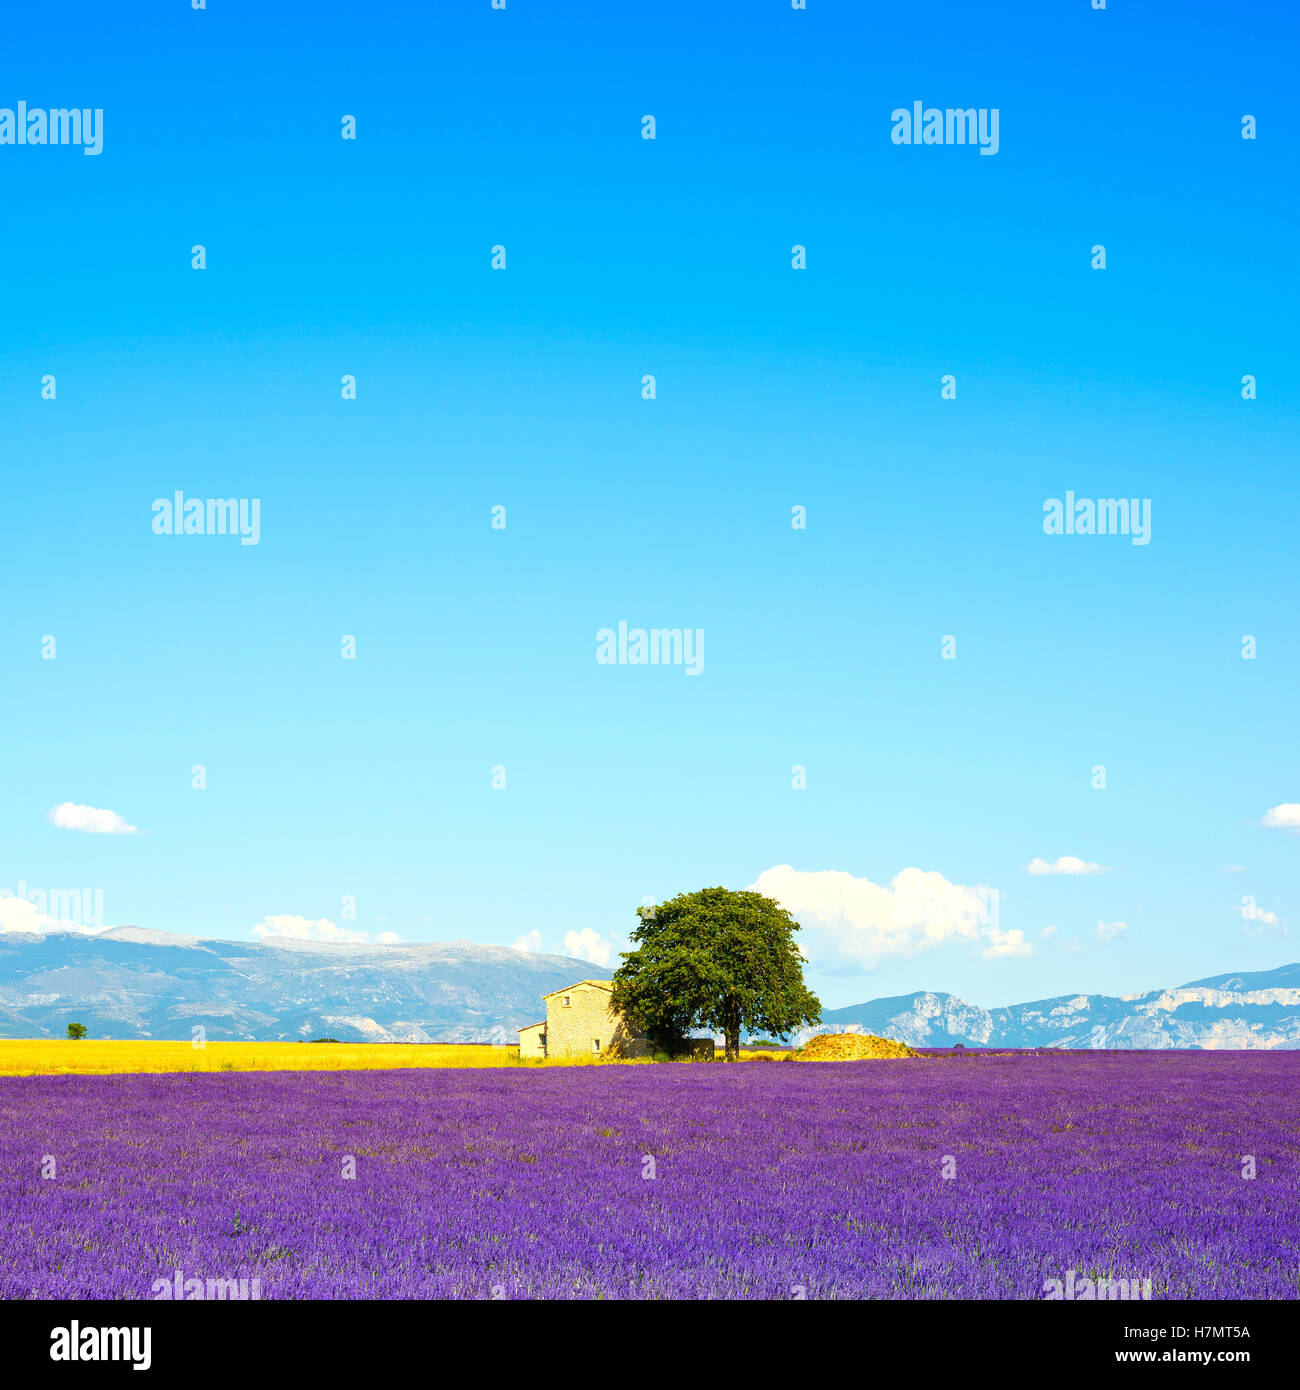 Lavendel Blumen blühen, Feld, Weizen, Haus und einsame Baum. Plateau de Valensole, Provence, Frankreich, Europa. Stockfoto